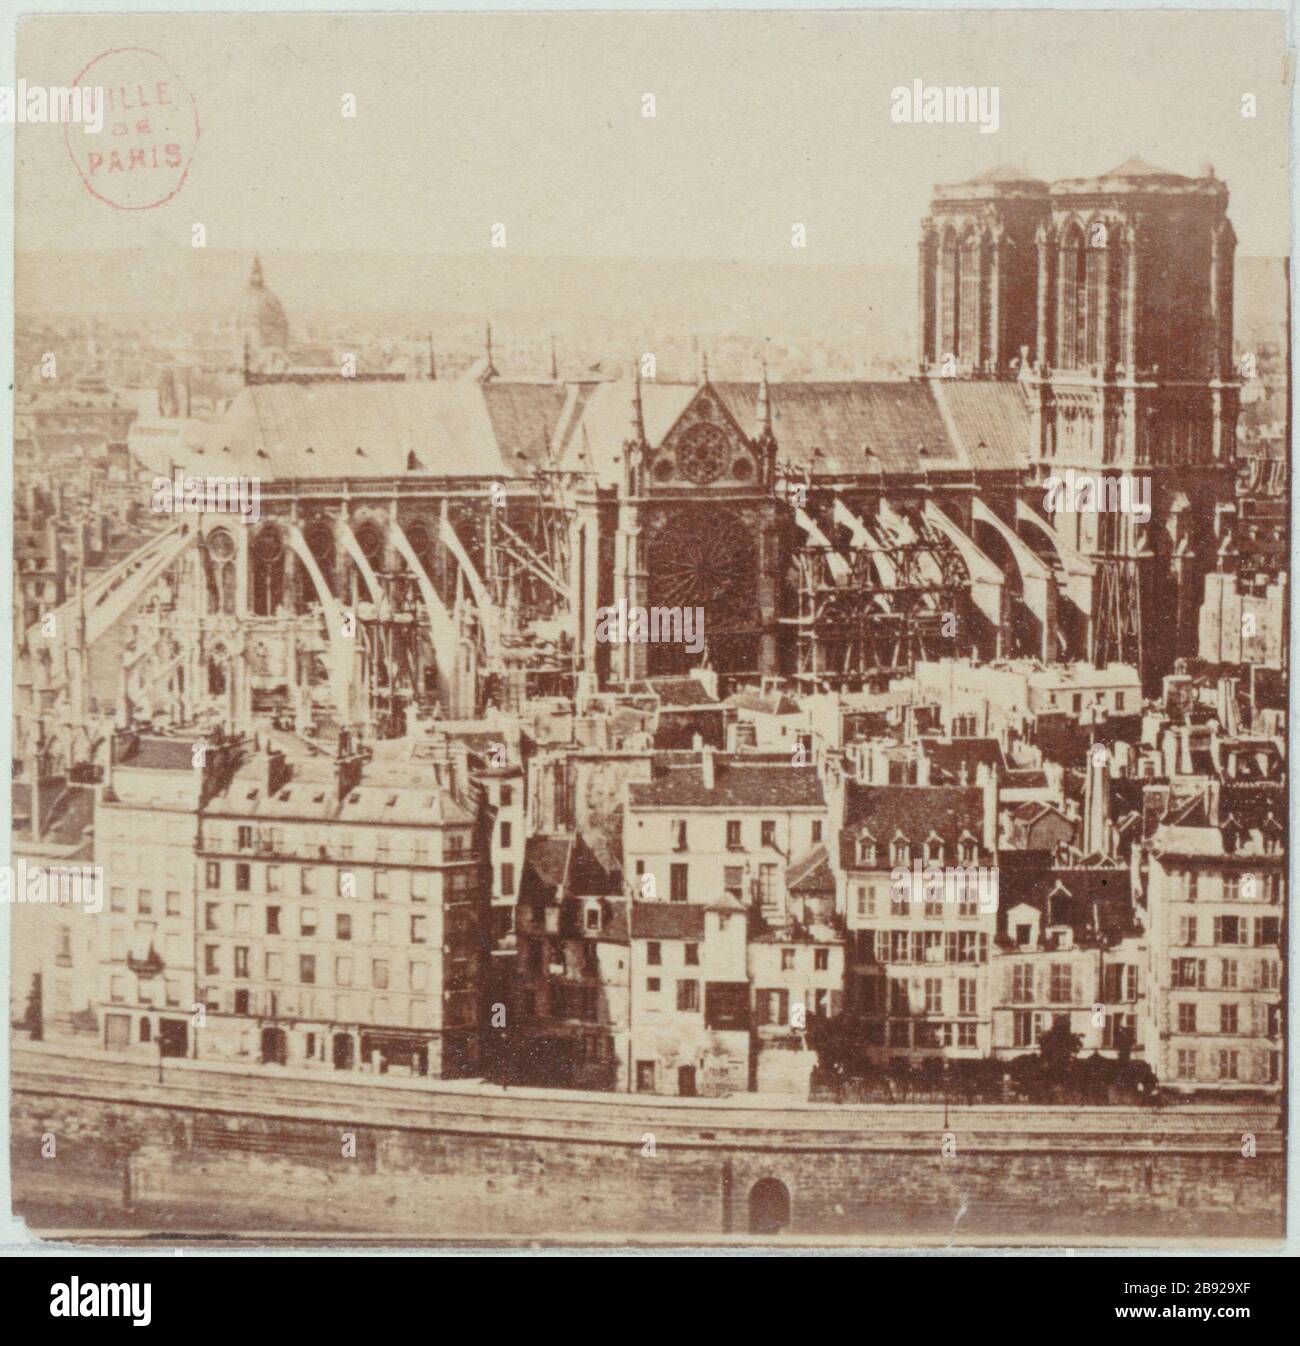 NOTRE-DAME CATHEDRAL Cathédrale Notre-Dame, avant la construction de la  flèche (1859-1860) projetée par Eugène-Emmanuel Viollet-le-Duc (1814-1879).  Paris (IVème arr.). Paris, musée Carnavalet Stock Photo - Alamy